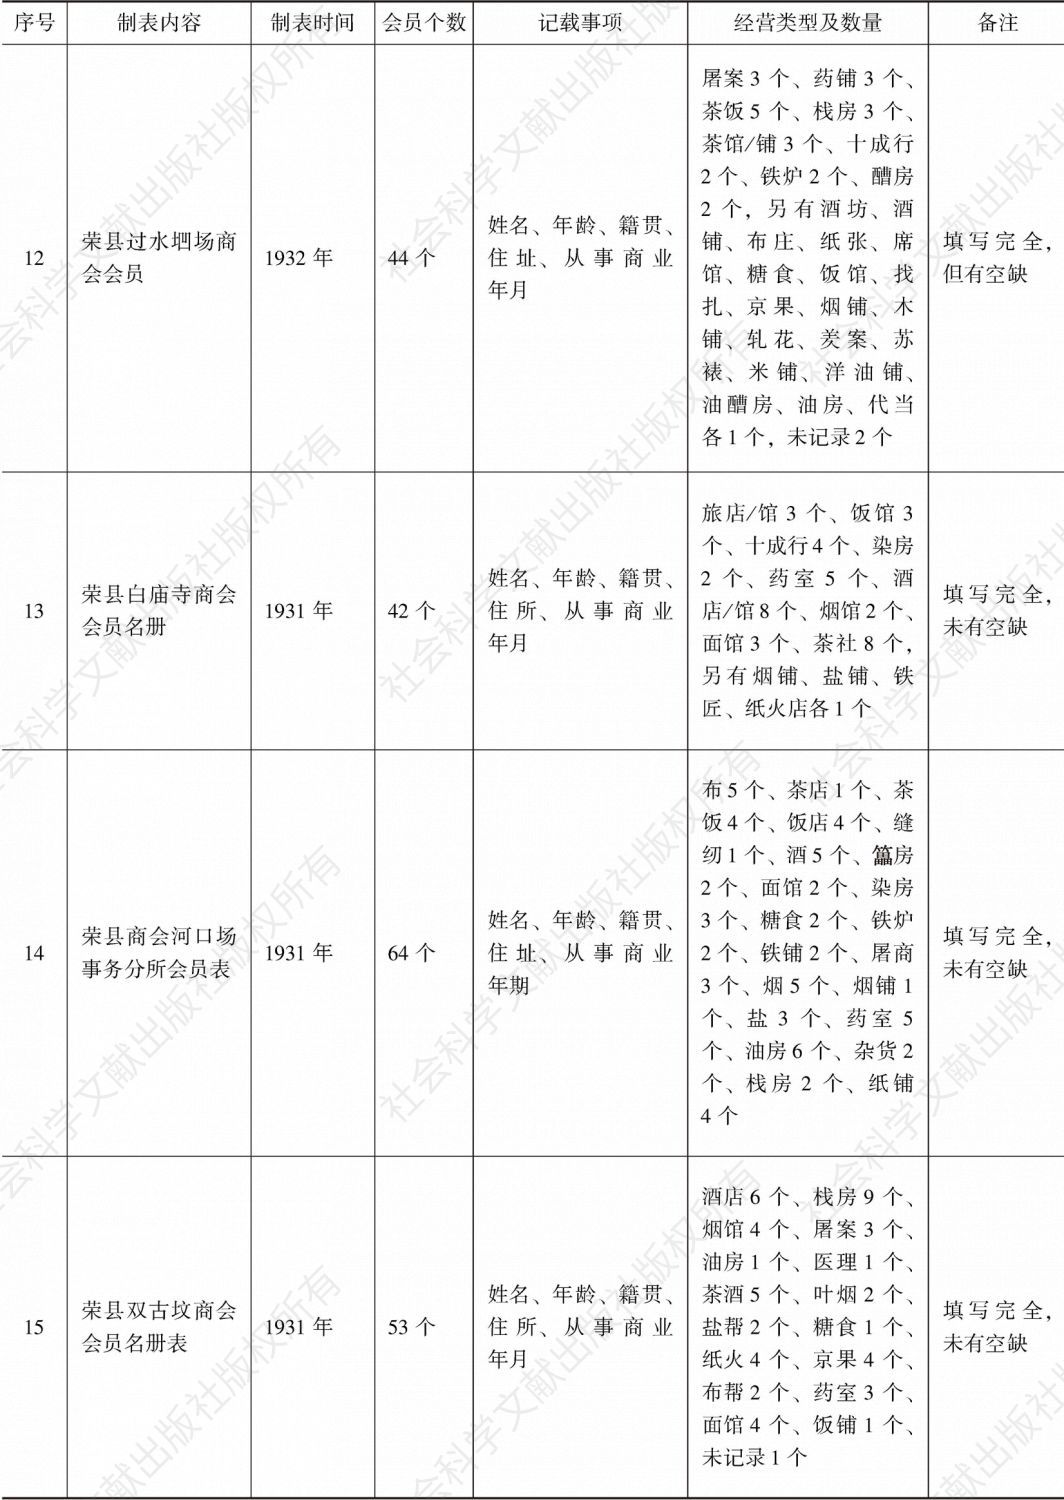 荣县商会事务分所造报名册汇编-续表3